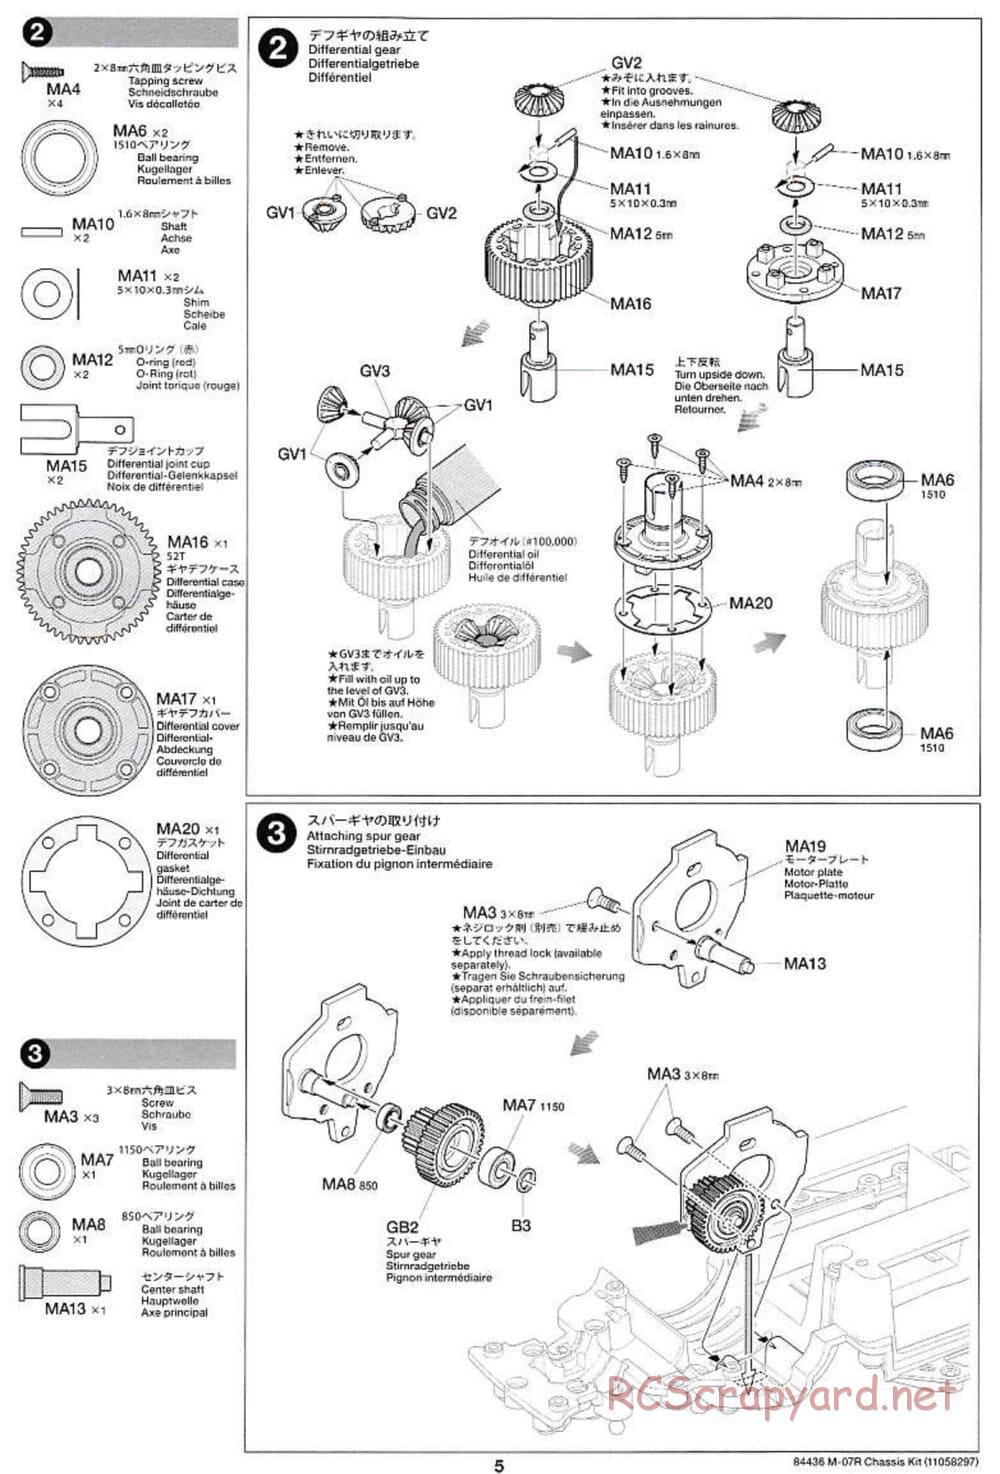 Tamiya - M-07R Chassis - Manual - Page 5